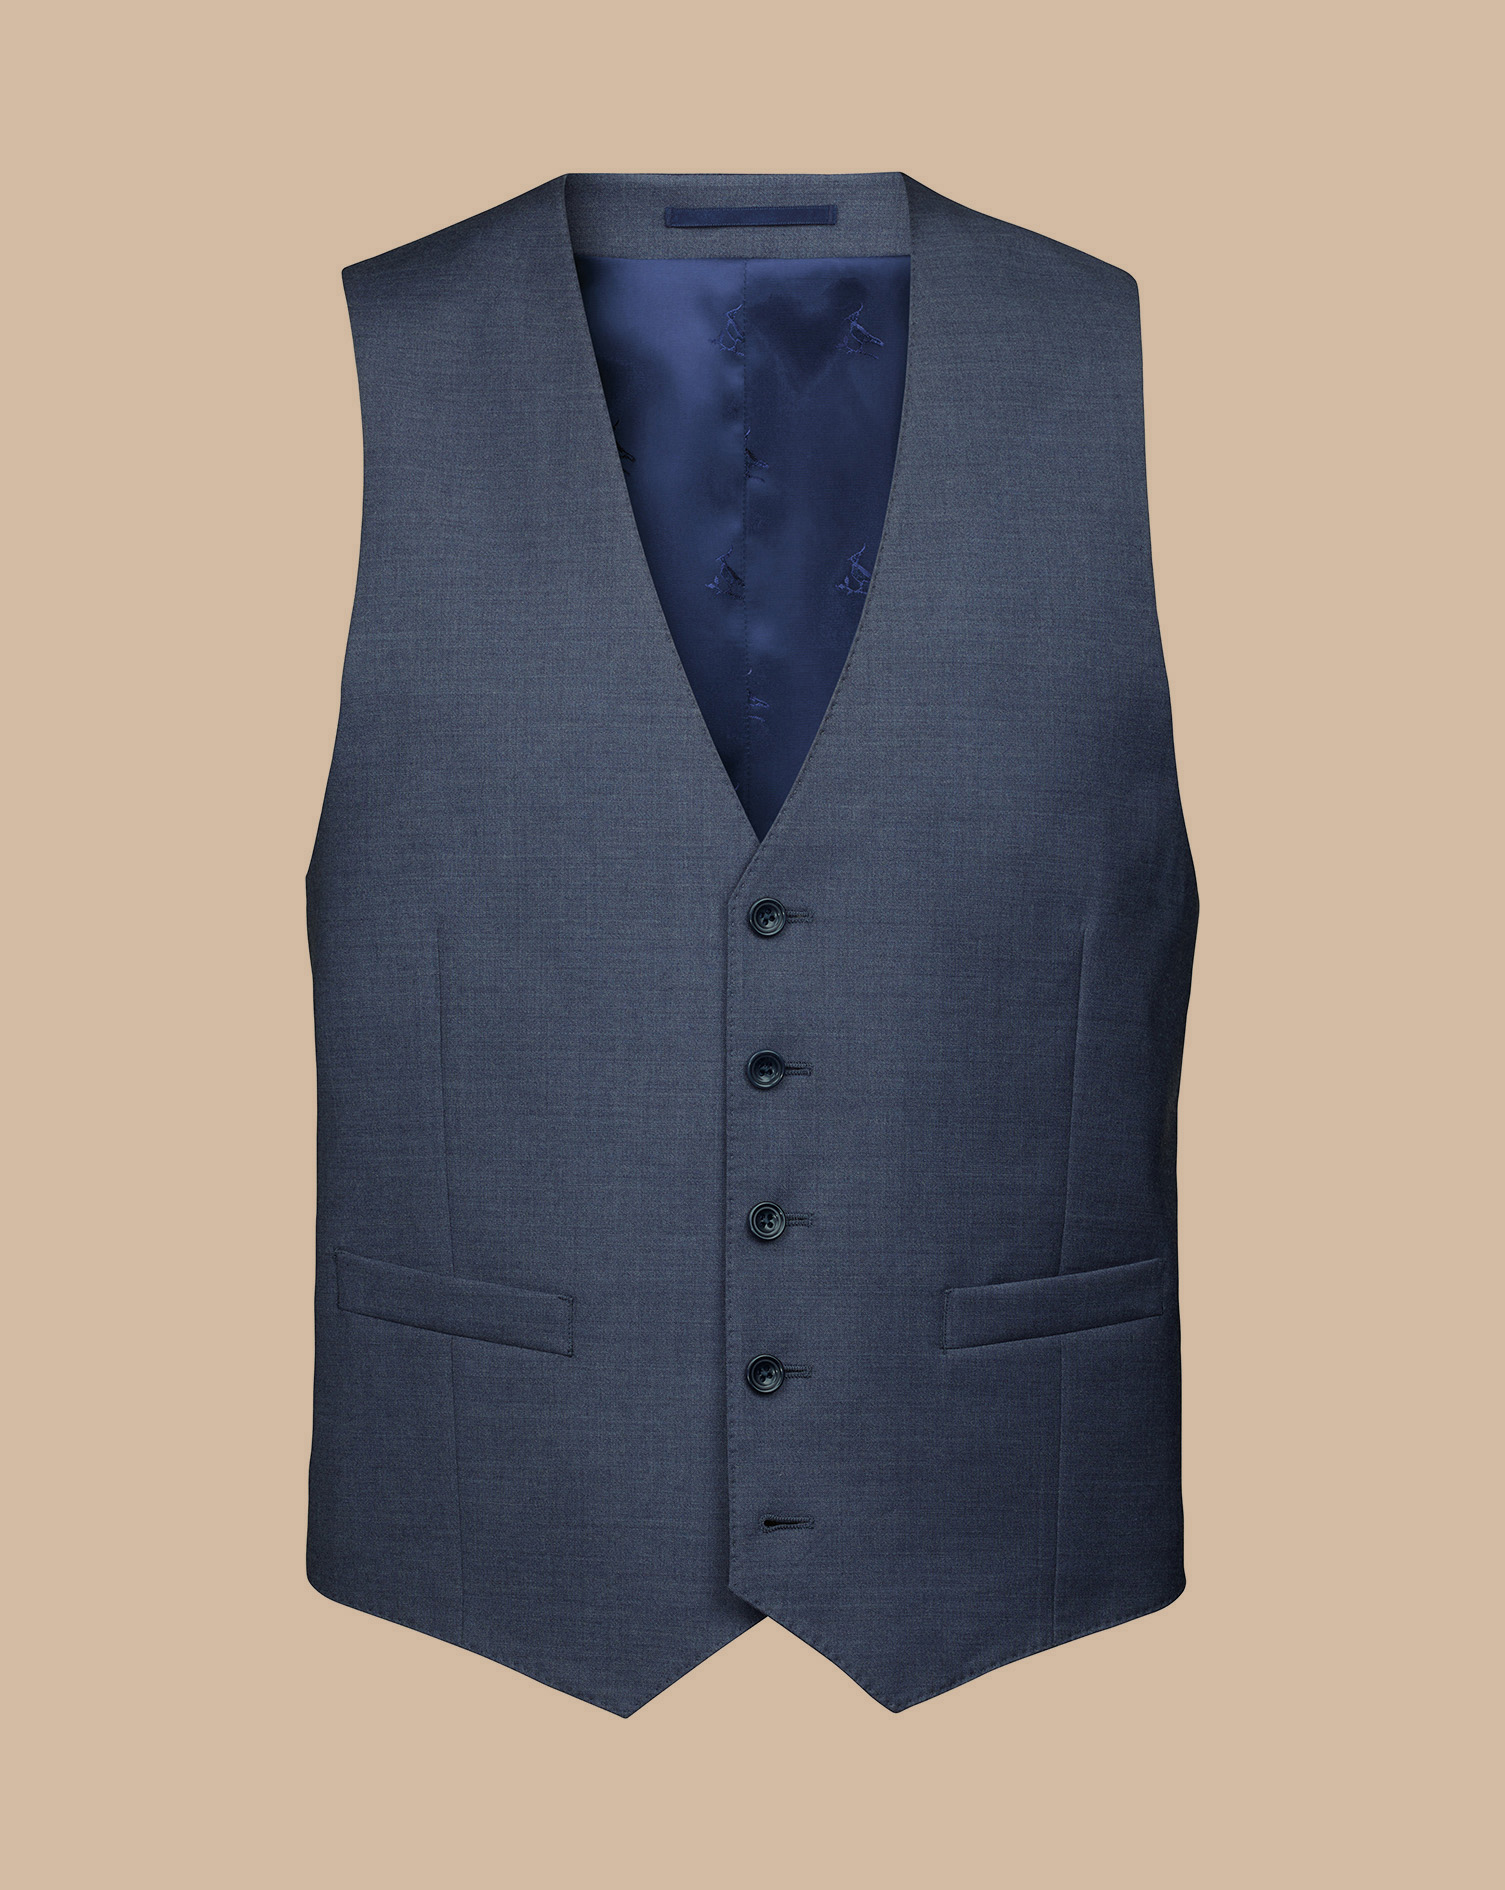 Men's Charles Tyrwhitt Italian Suit Waistcoat - Heather Blue Size w40 Wool
